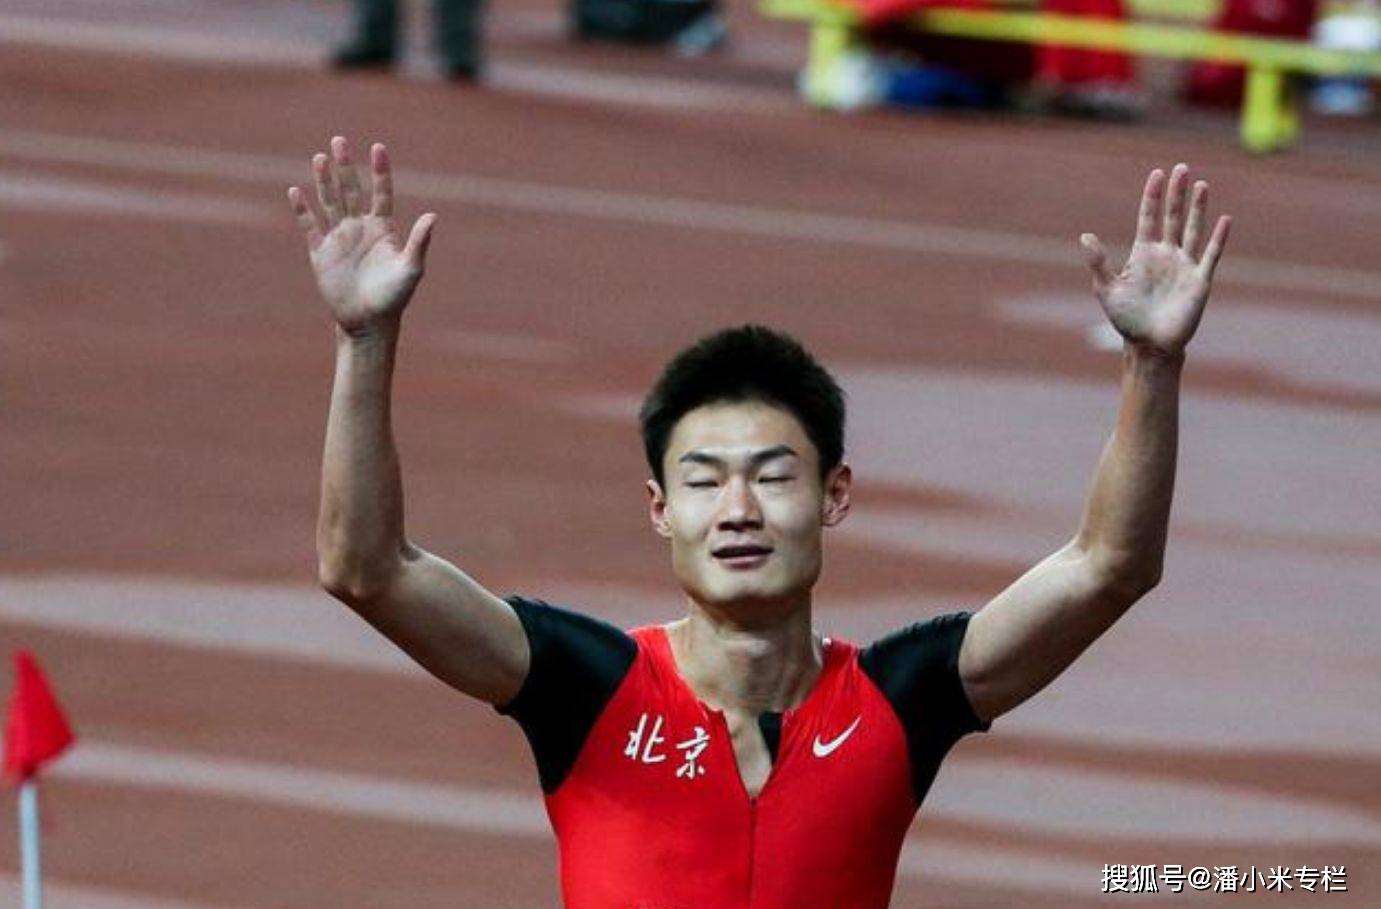 中国短跑名将张培萌， 重返公众视野， 深夜涉嫌殴打岳母被拘